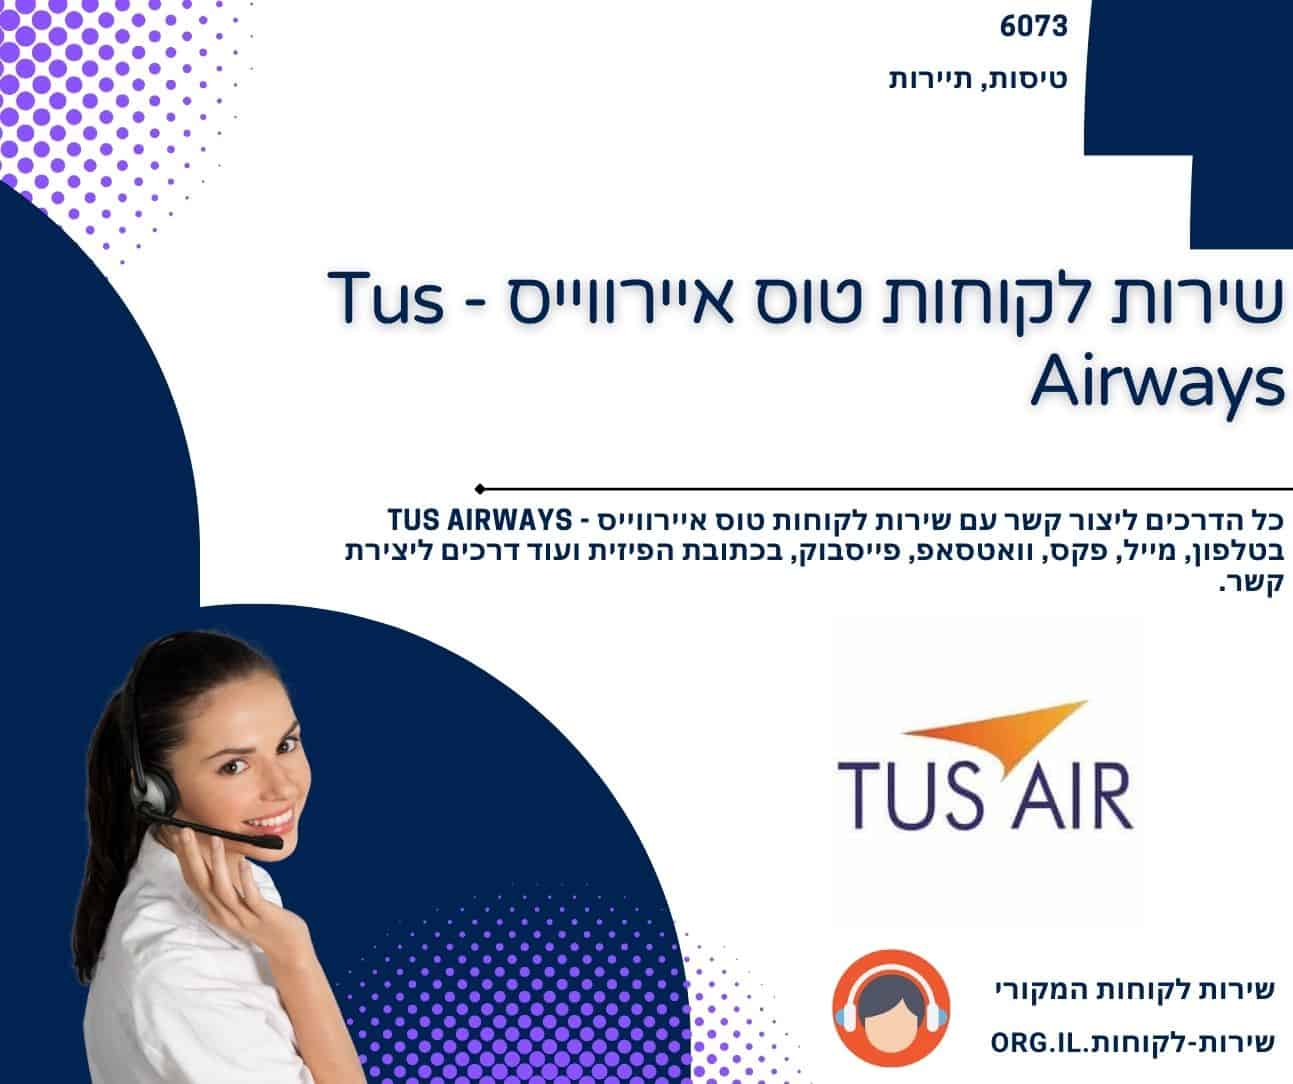 שירות לקוחות טוס איירווייס - Tus Airways